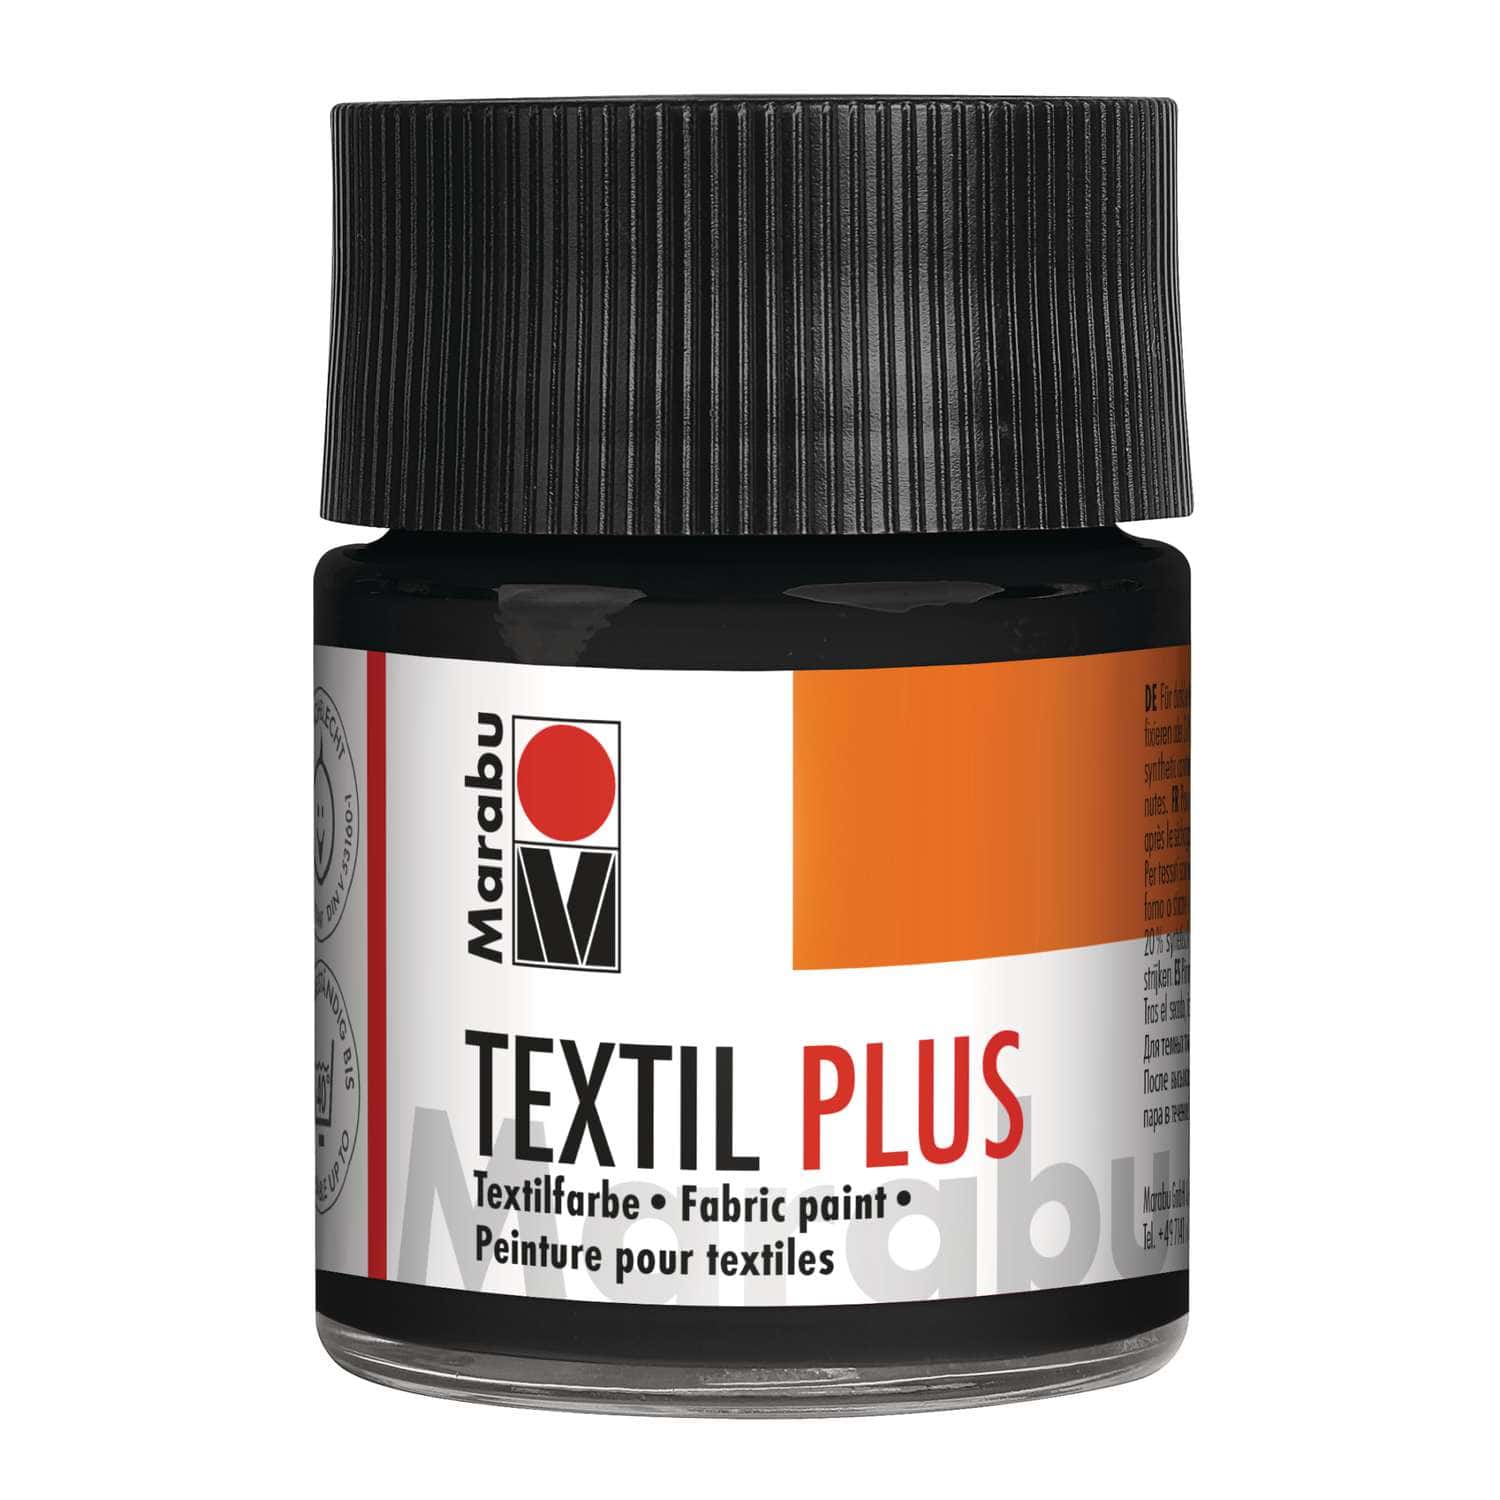 Recharge encre noire x 2 pour tampon textile - Feutre peinture textile -  Peinture textile